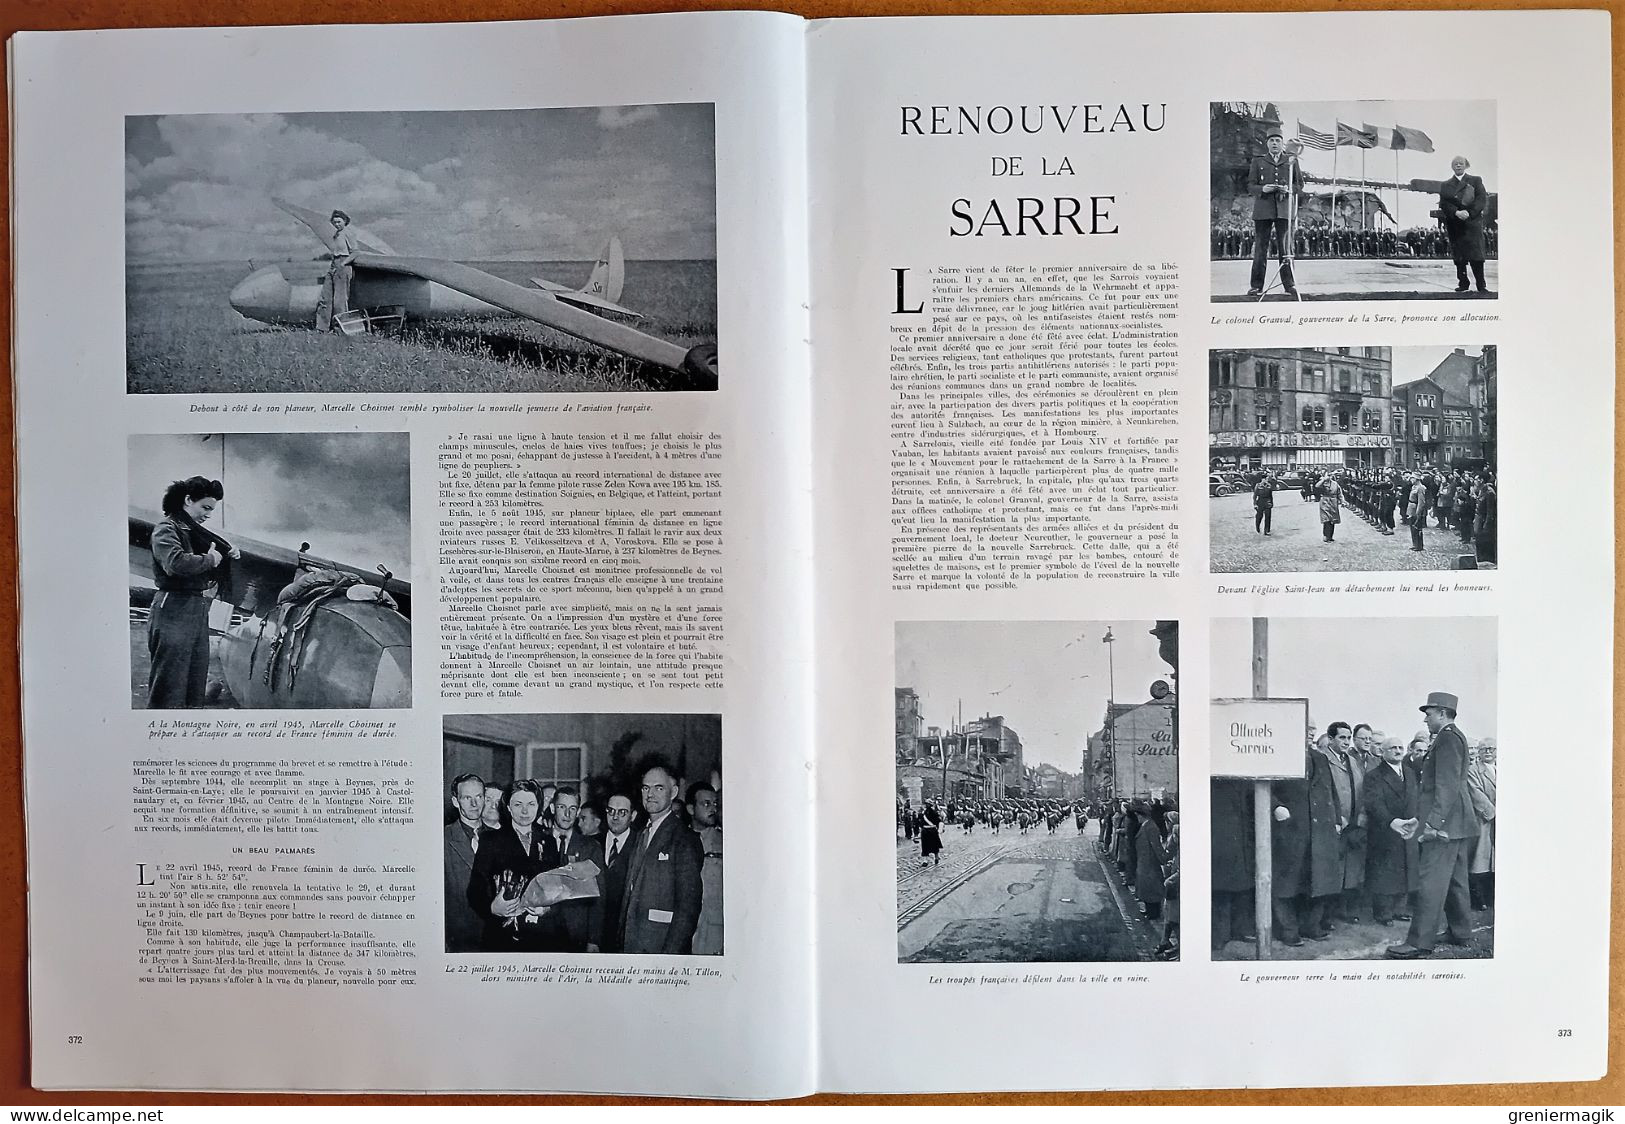 France Illustration N°27 06/04/1946 Jubilé de l'Aga Khan/Norvège/Vol à voile Marcelle Choisnet/Procès Nuremberg/Sarre